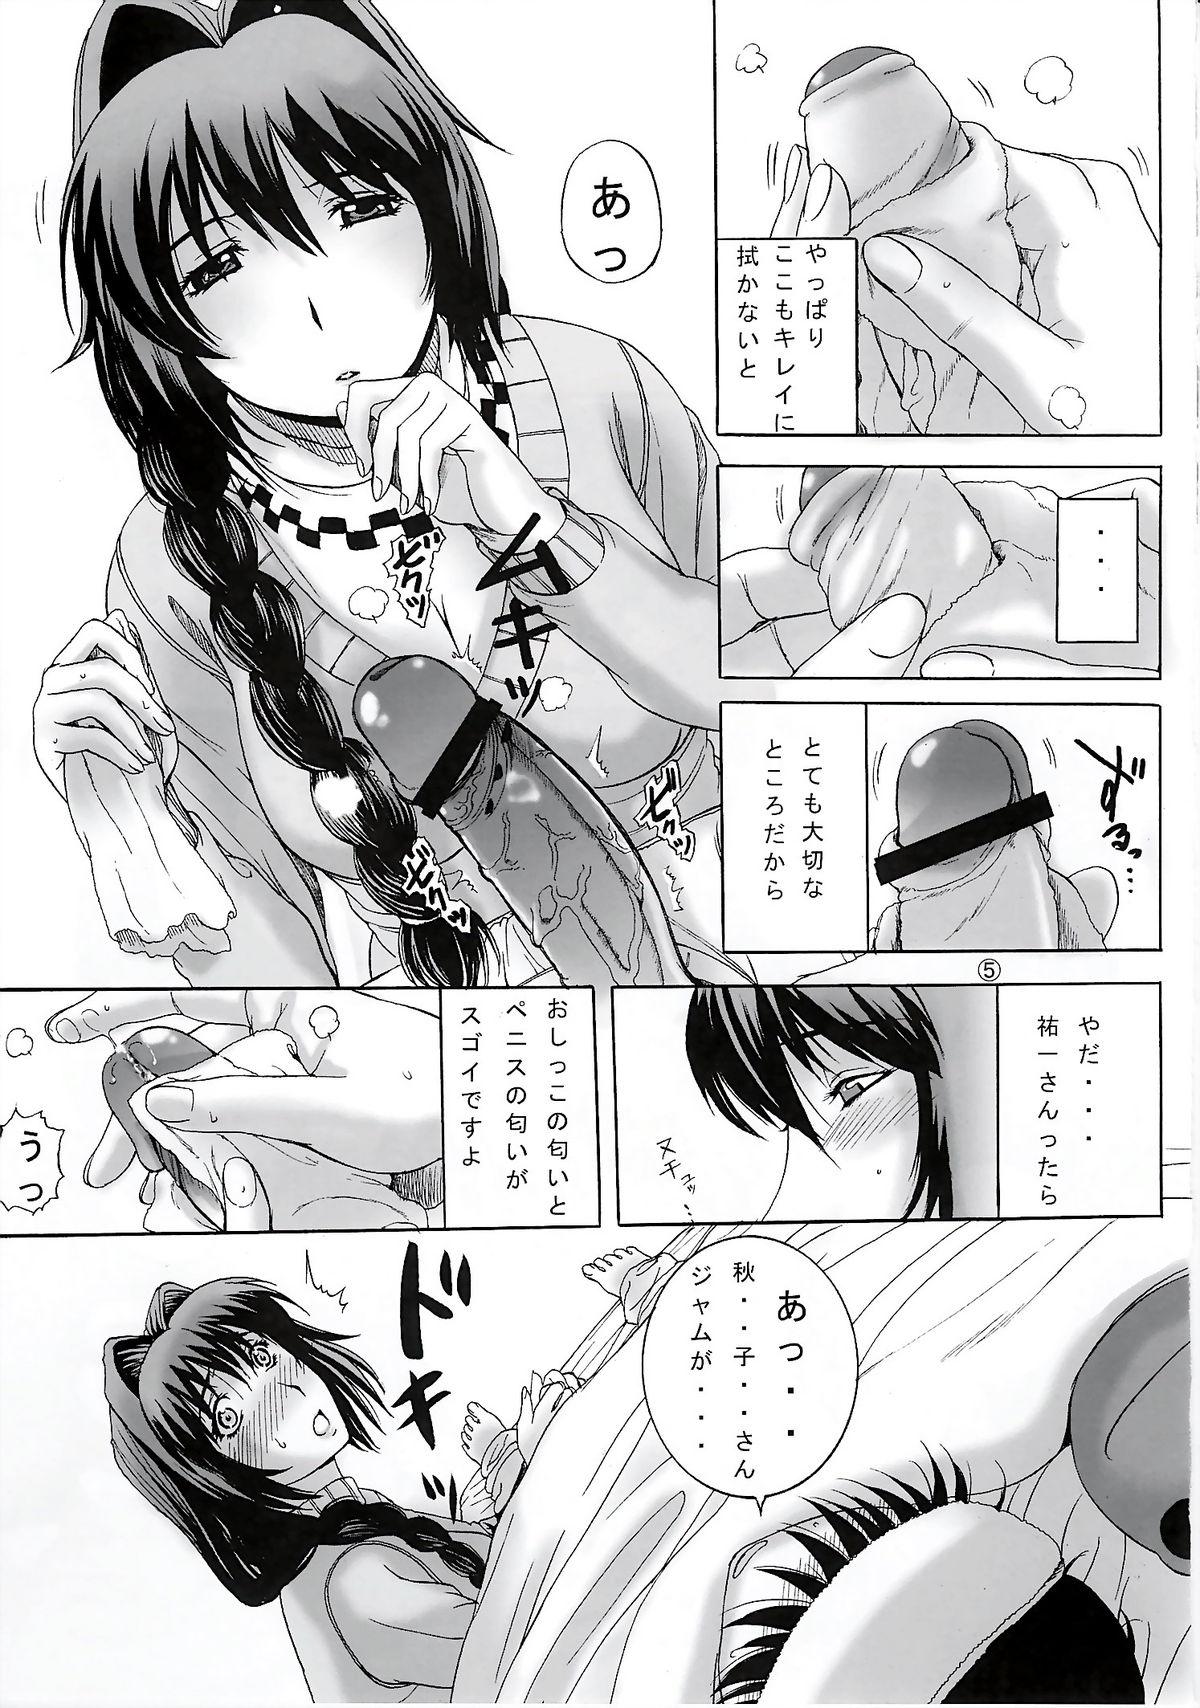 Fun Minase-ke - Kanon Romantic - Page 5